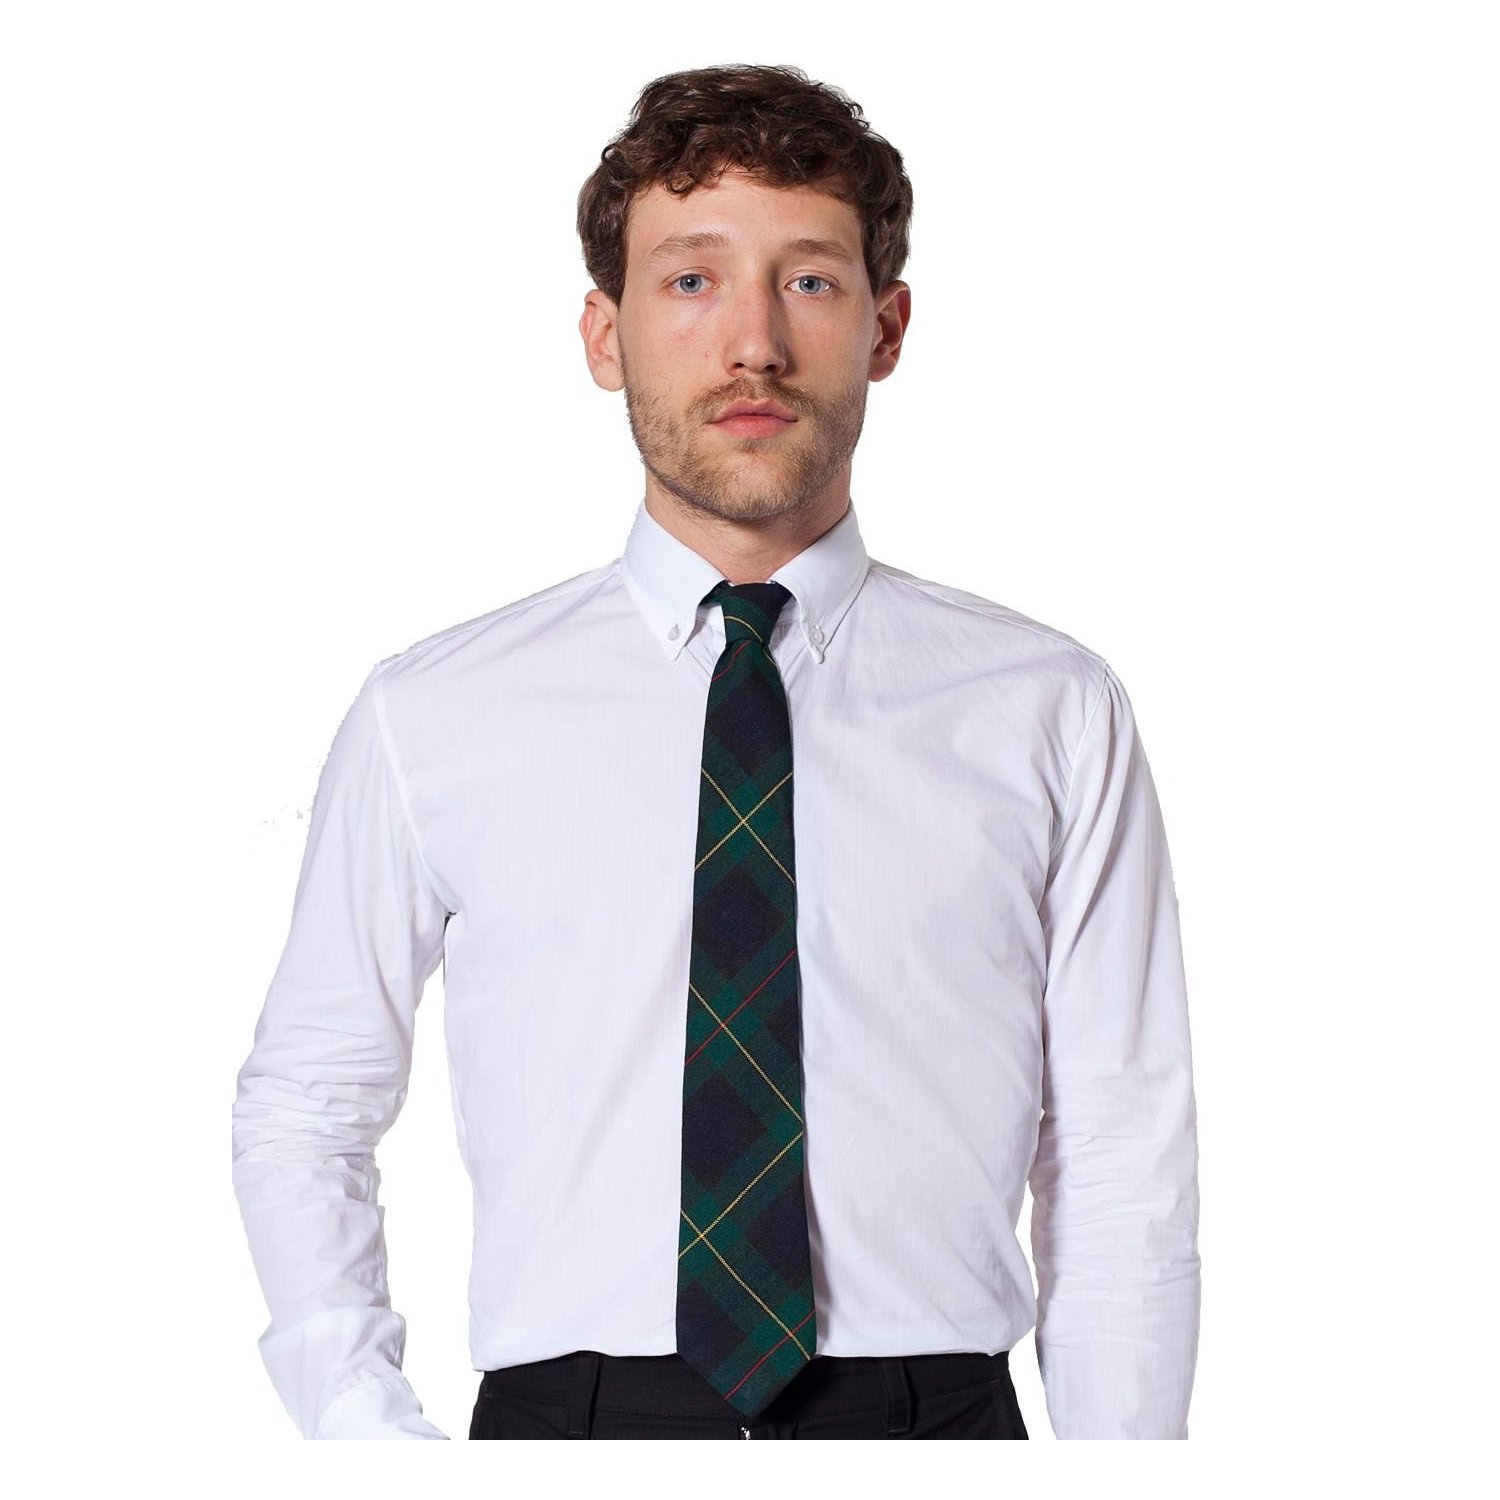 Cravate-classique-american-apparel-lecatalog.com